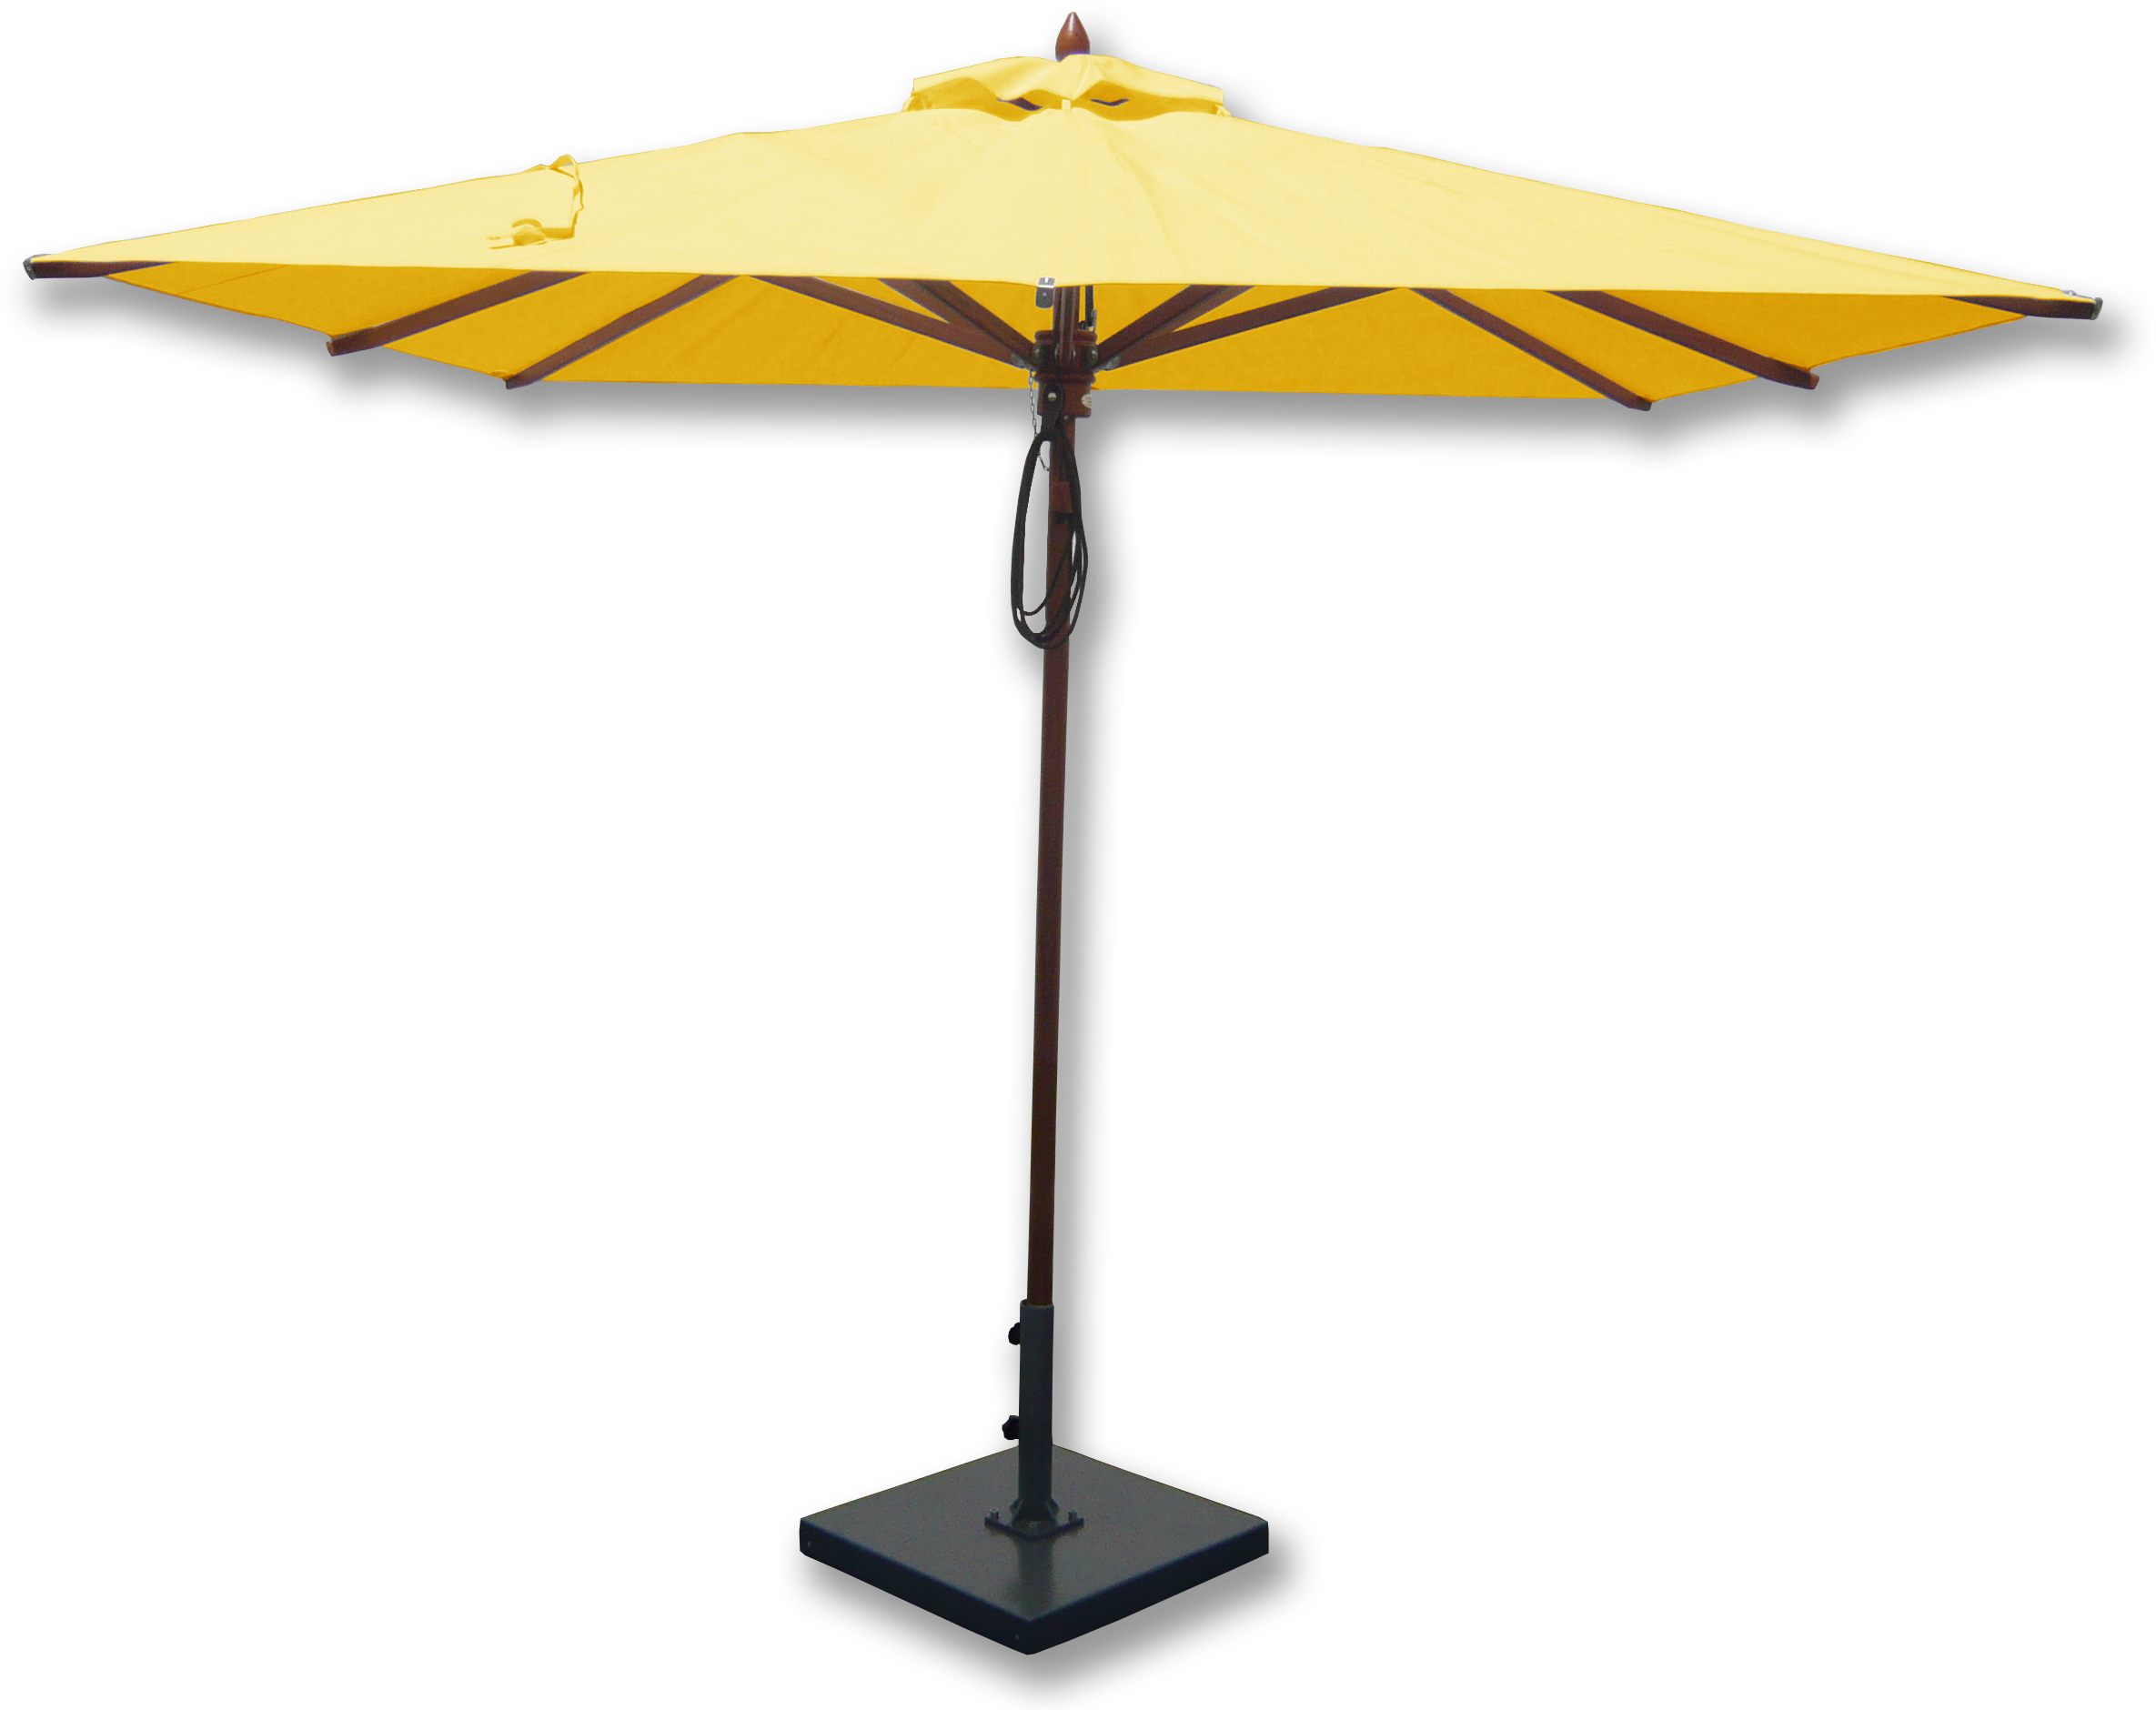 Outdoor Yellow Umbrella Png - 8' Umbrella Greencorner Fabric: Natural (2700x2100)